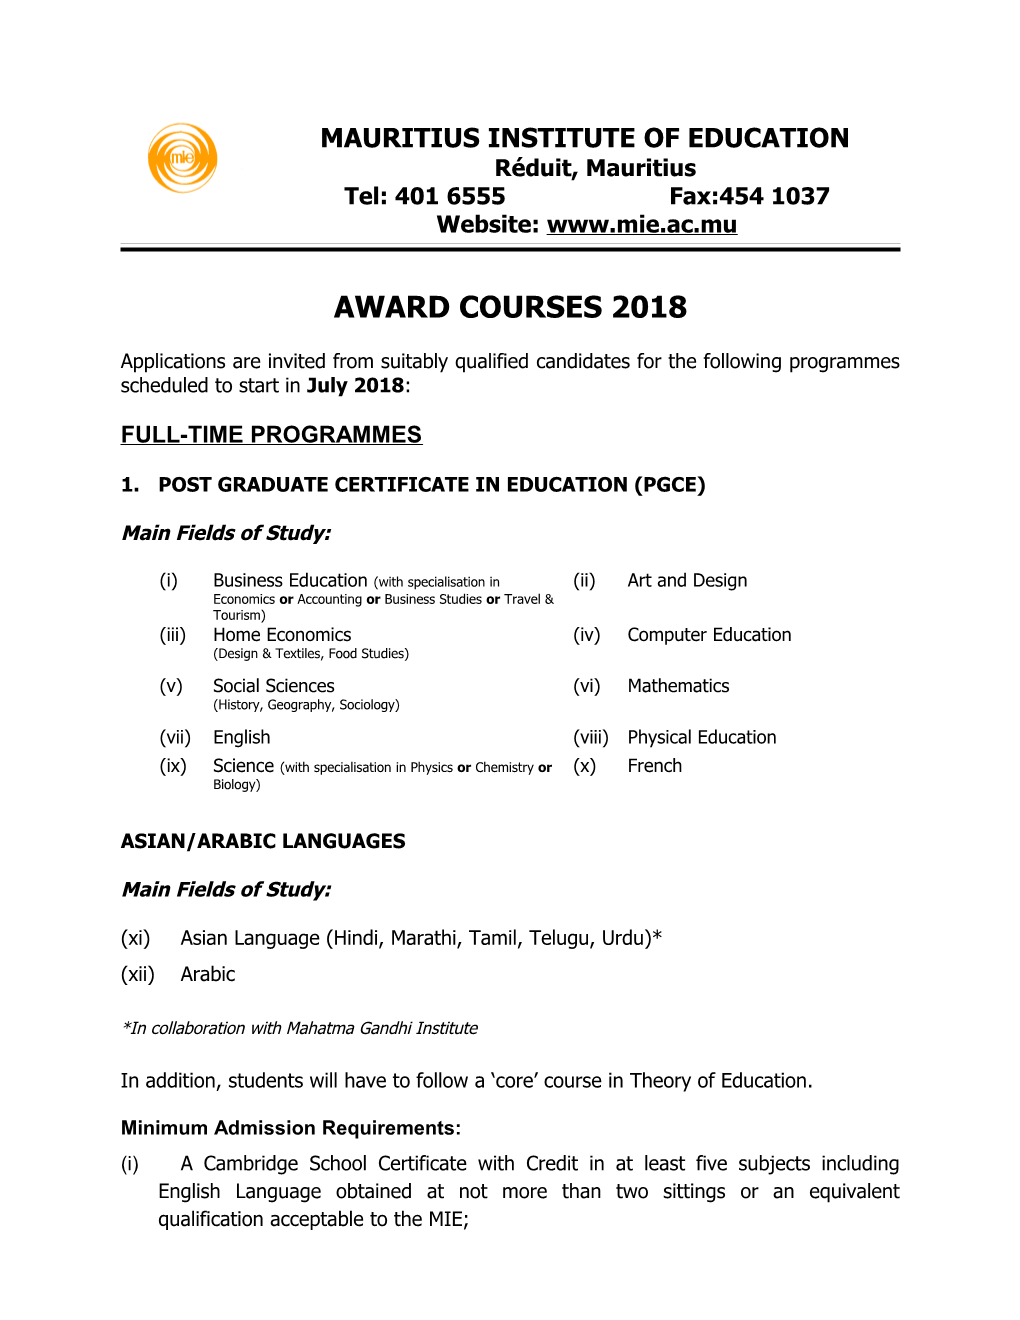 Award Courses 2018